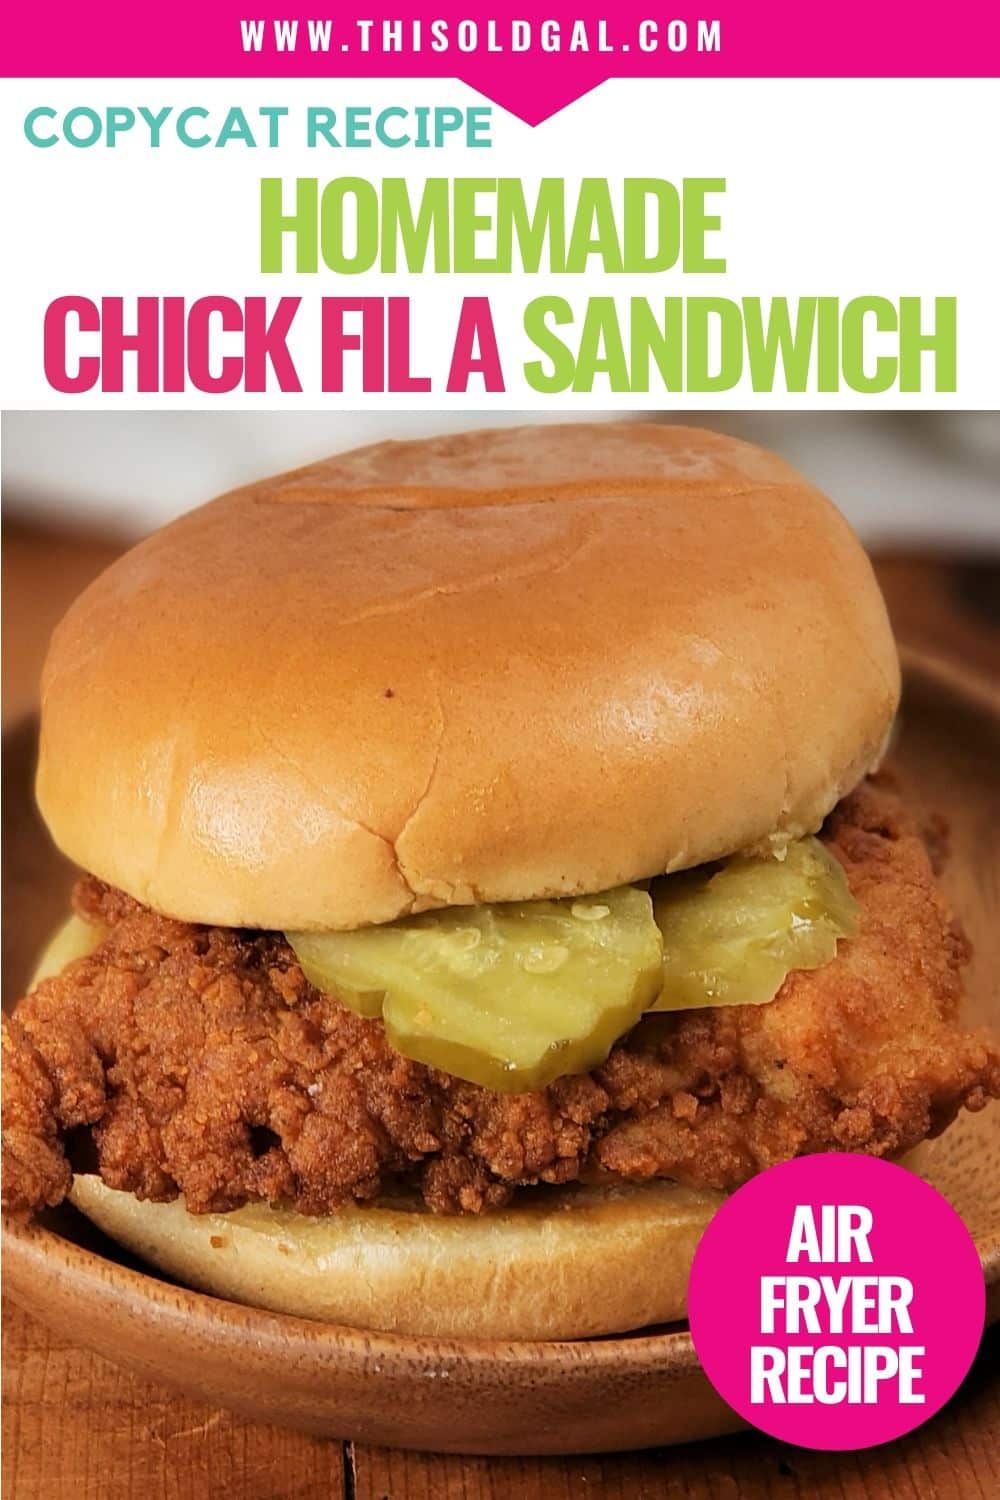 Air Fryer Chick Fil a Sandwich